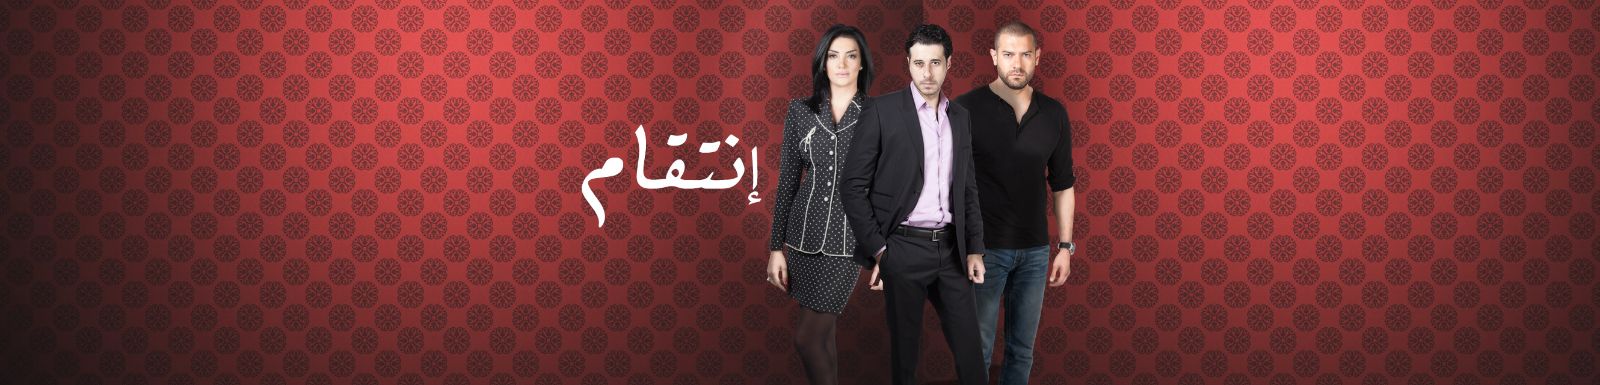 قصة وأحداث مسلسل إنتقام 2015 على قناة mbc مصر